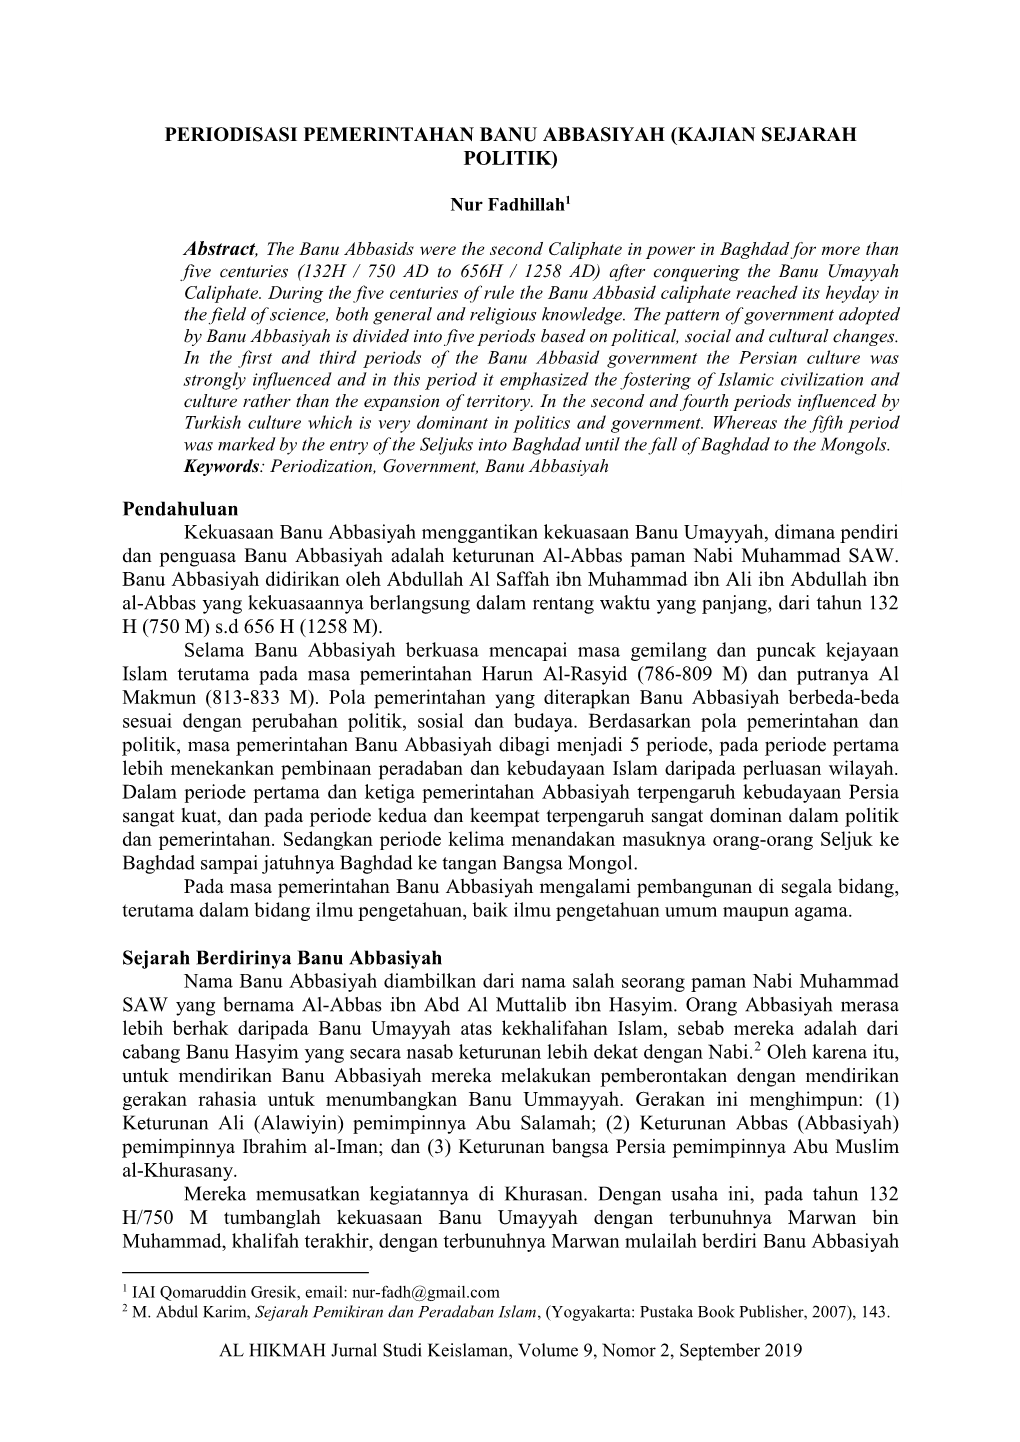 Periodisasi Pemerintahan Banu Abbasiyah (Kajian Sejarah Politik)